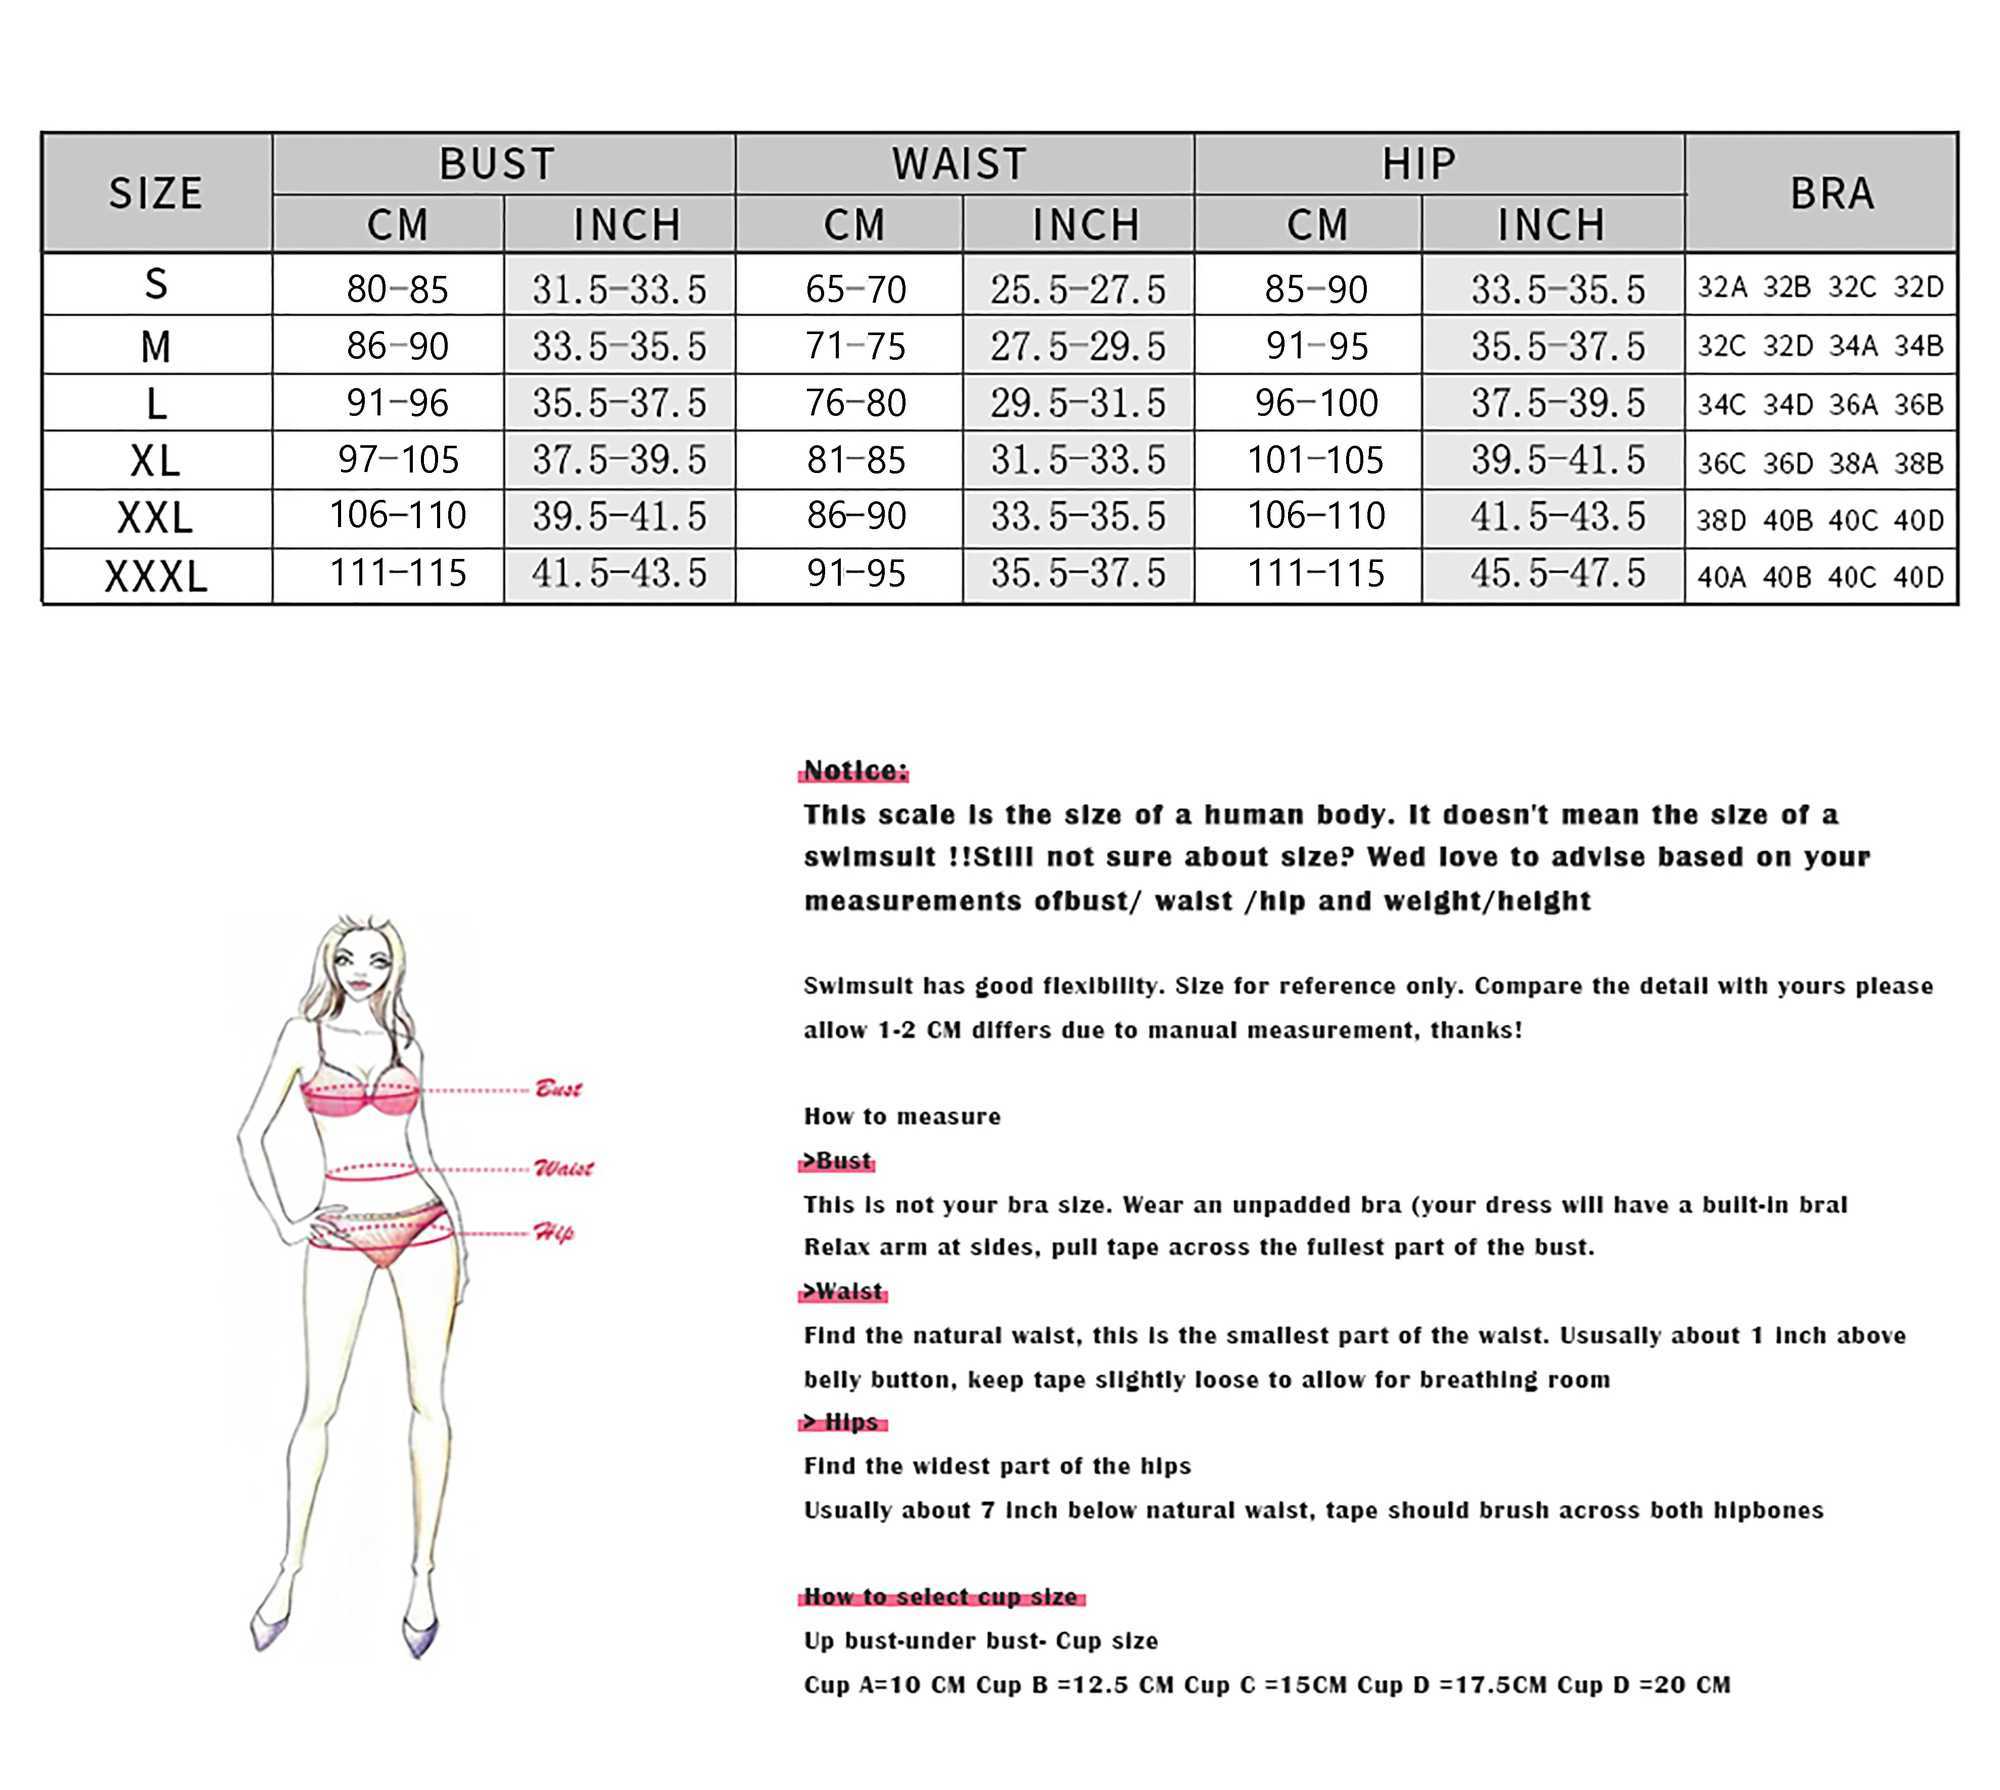 Dames Badmode 2024 3D Bloem Bikini Beugelbadpak met Rok Hoge Taille voor Dames Push Up Tweedelige Badpakken Zomer Vrouwelijke yq240330